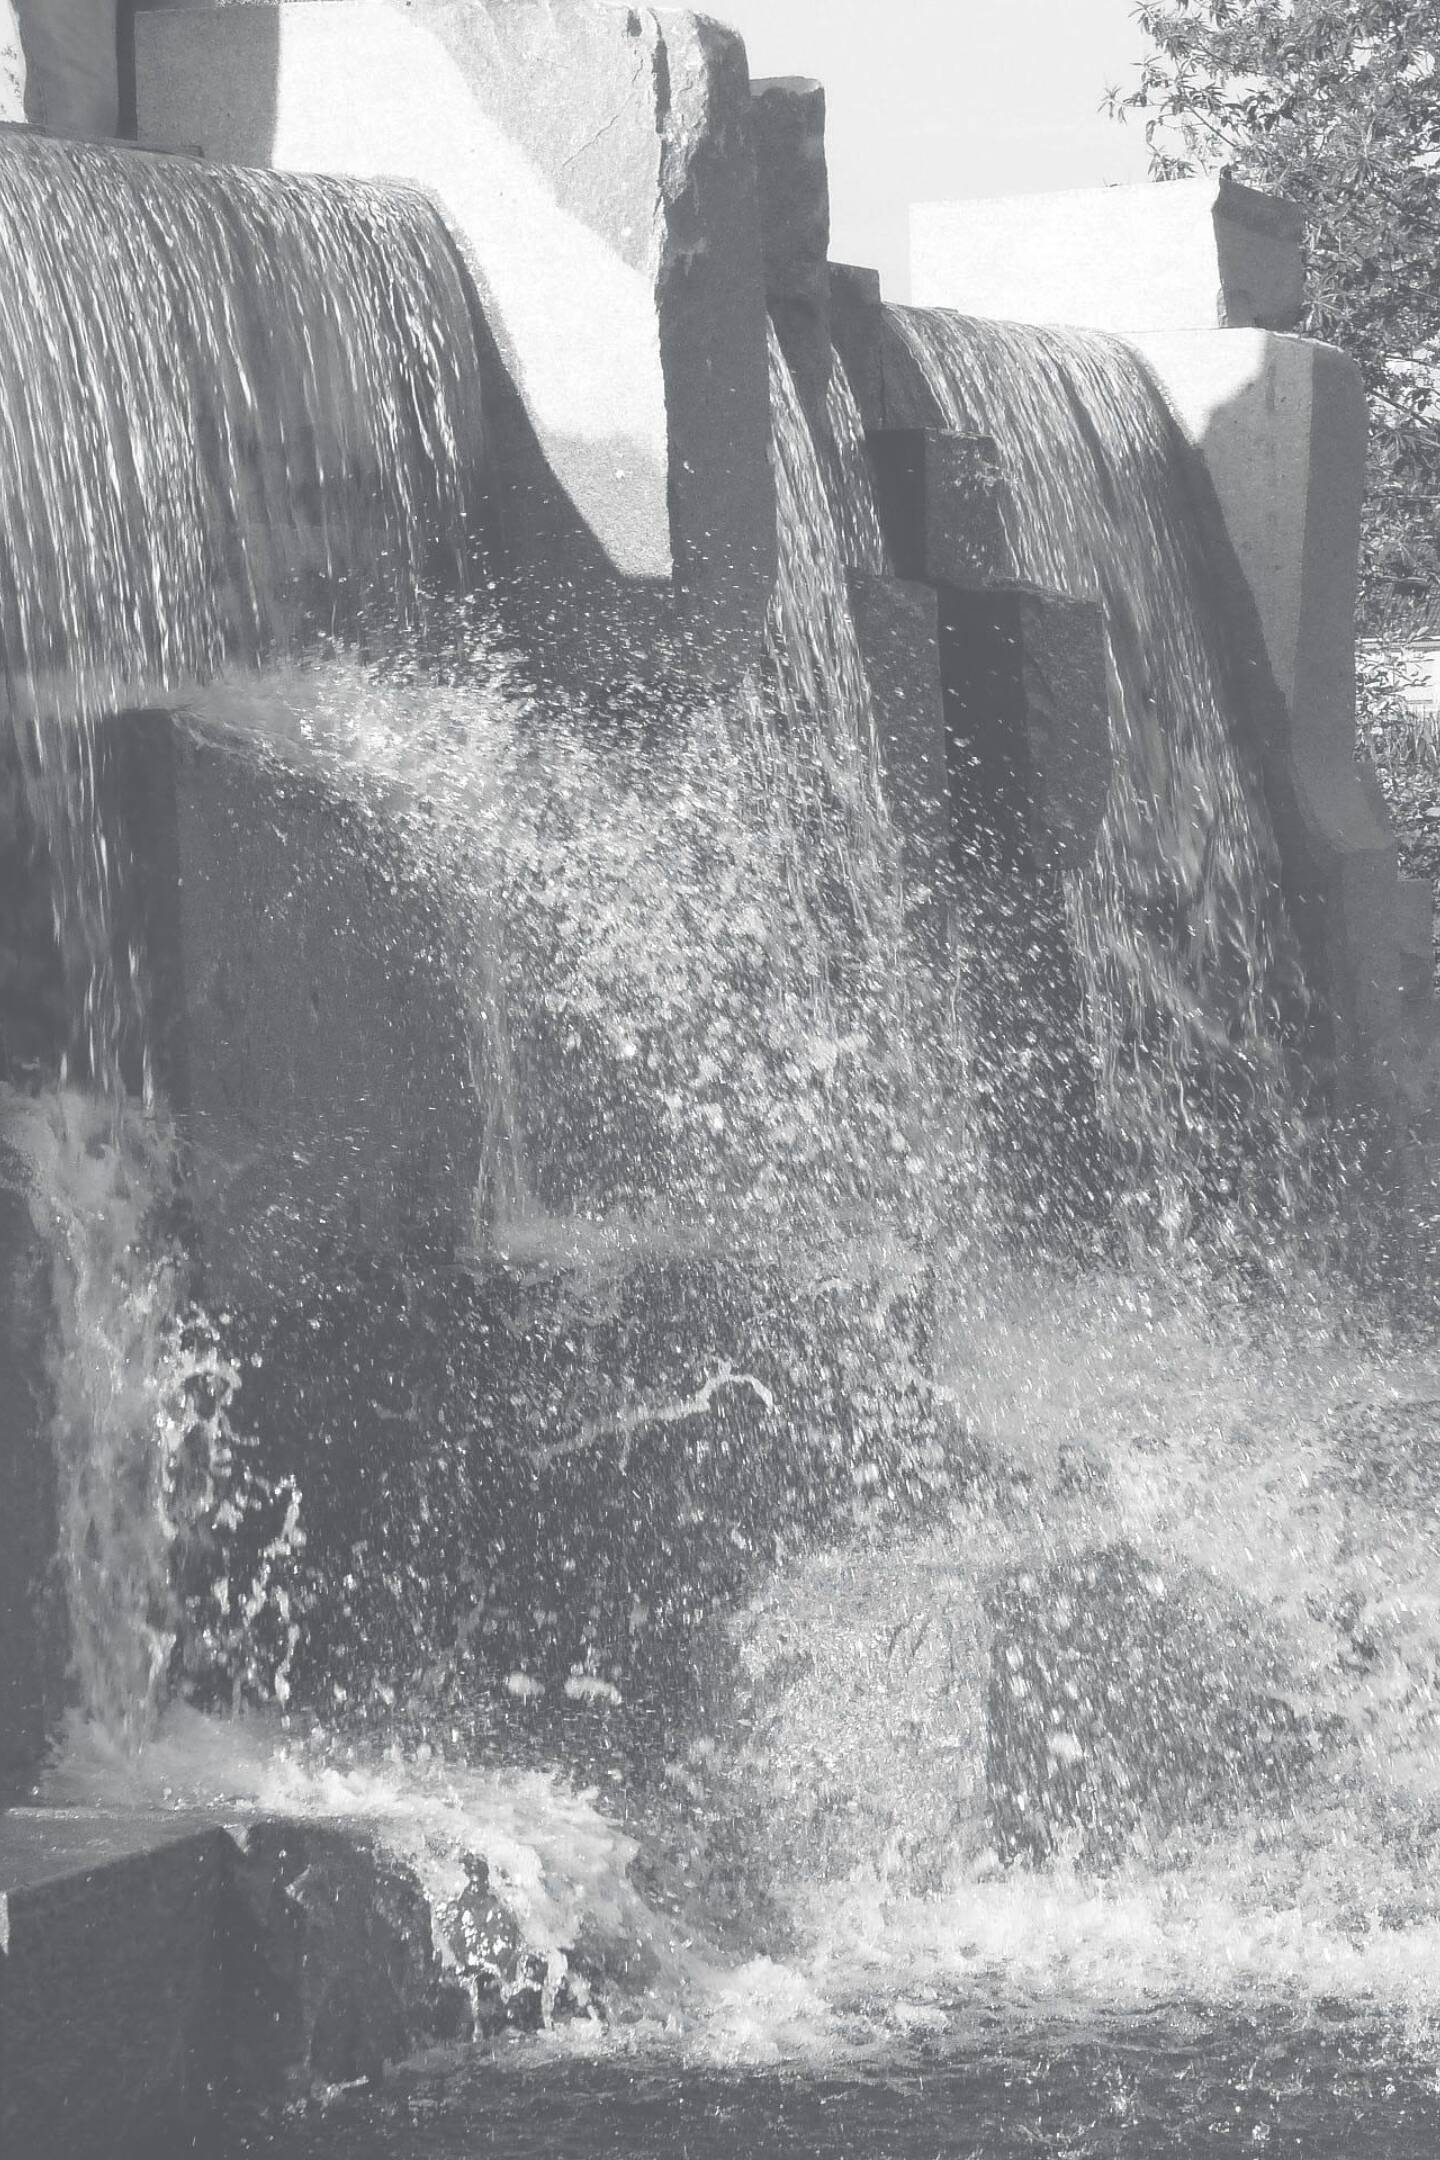 Kusser Wasserfall Tittlinger Granit 1 1C